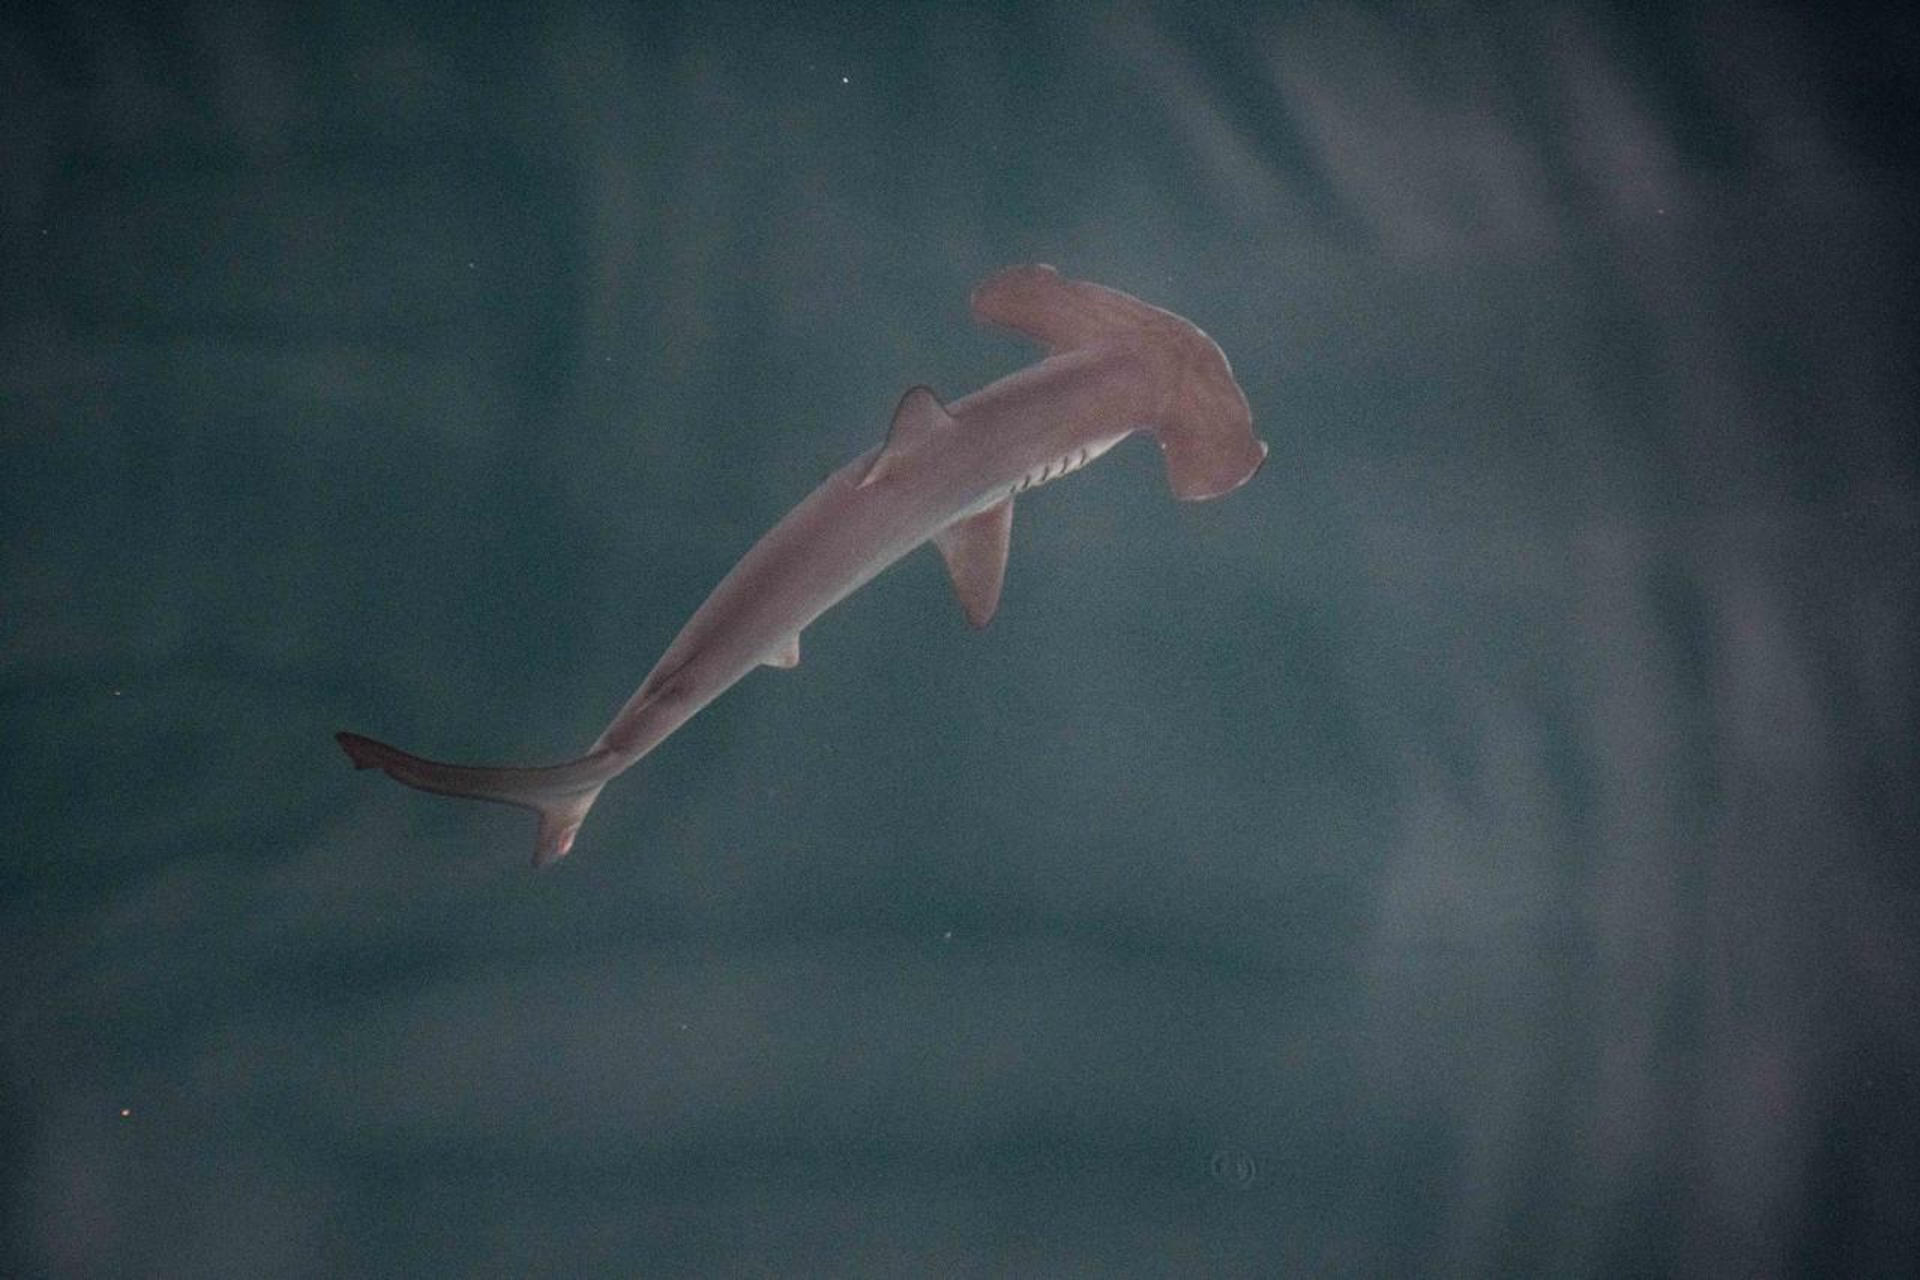 Fotografía cedida de un ejemplar juvenil de tiburón martillo liso (sphyrna zygaena) en una pequeña bahía de la isla Isabela.